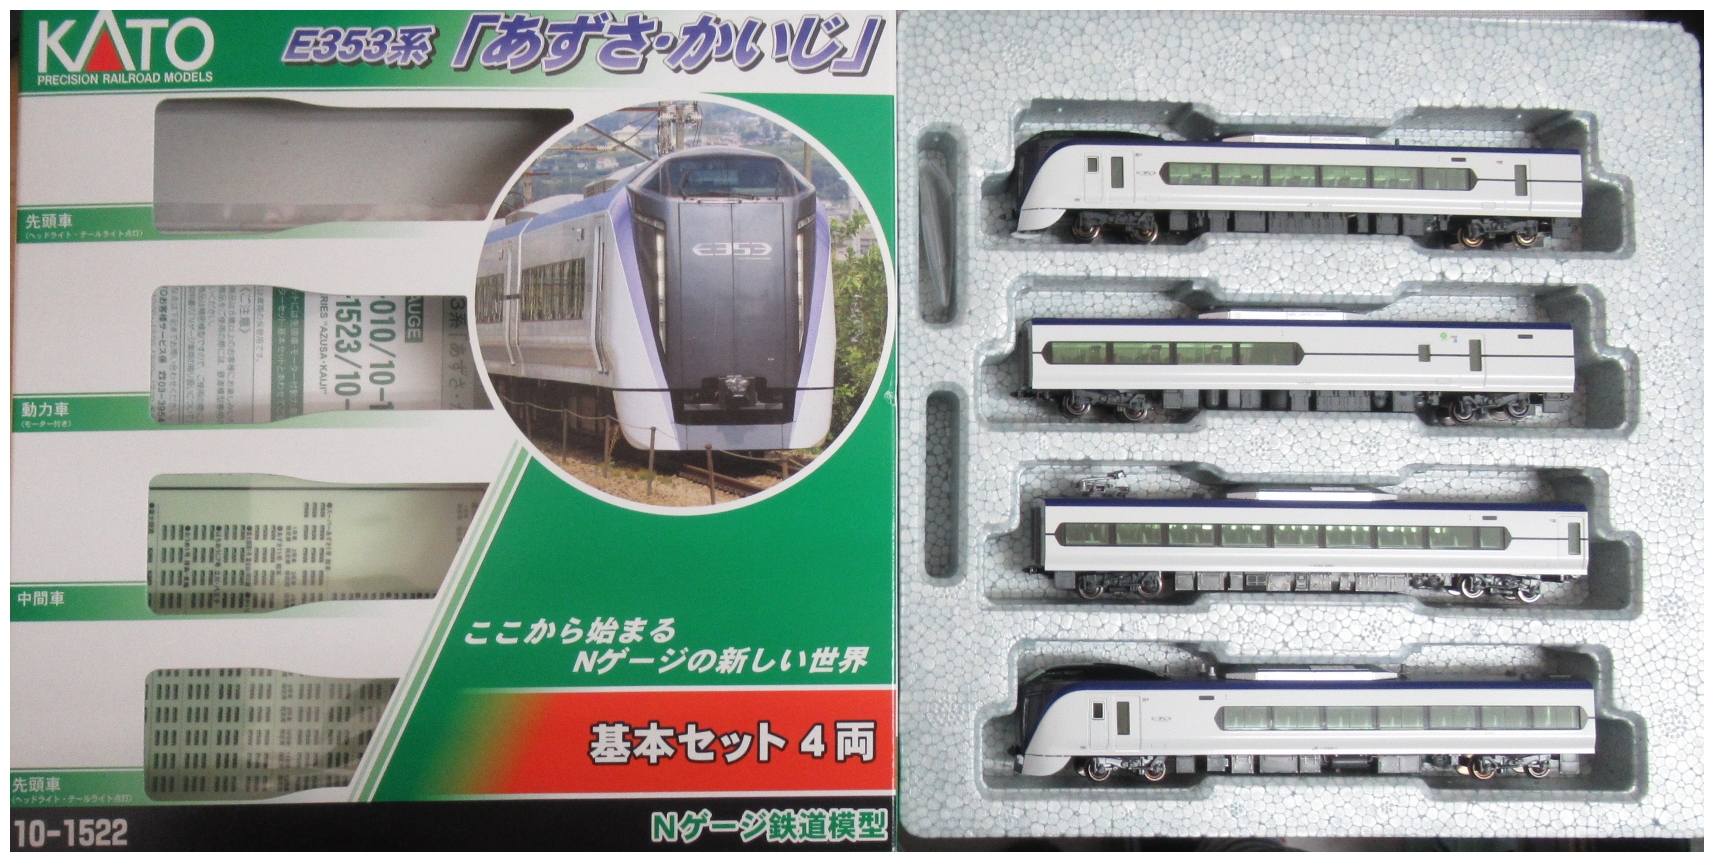 KATO Nゲージ E353系「あずさ ・ かいじ」基本セット 4両 10-1522 鉄道